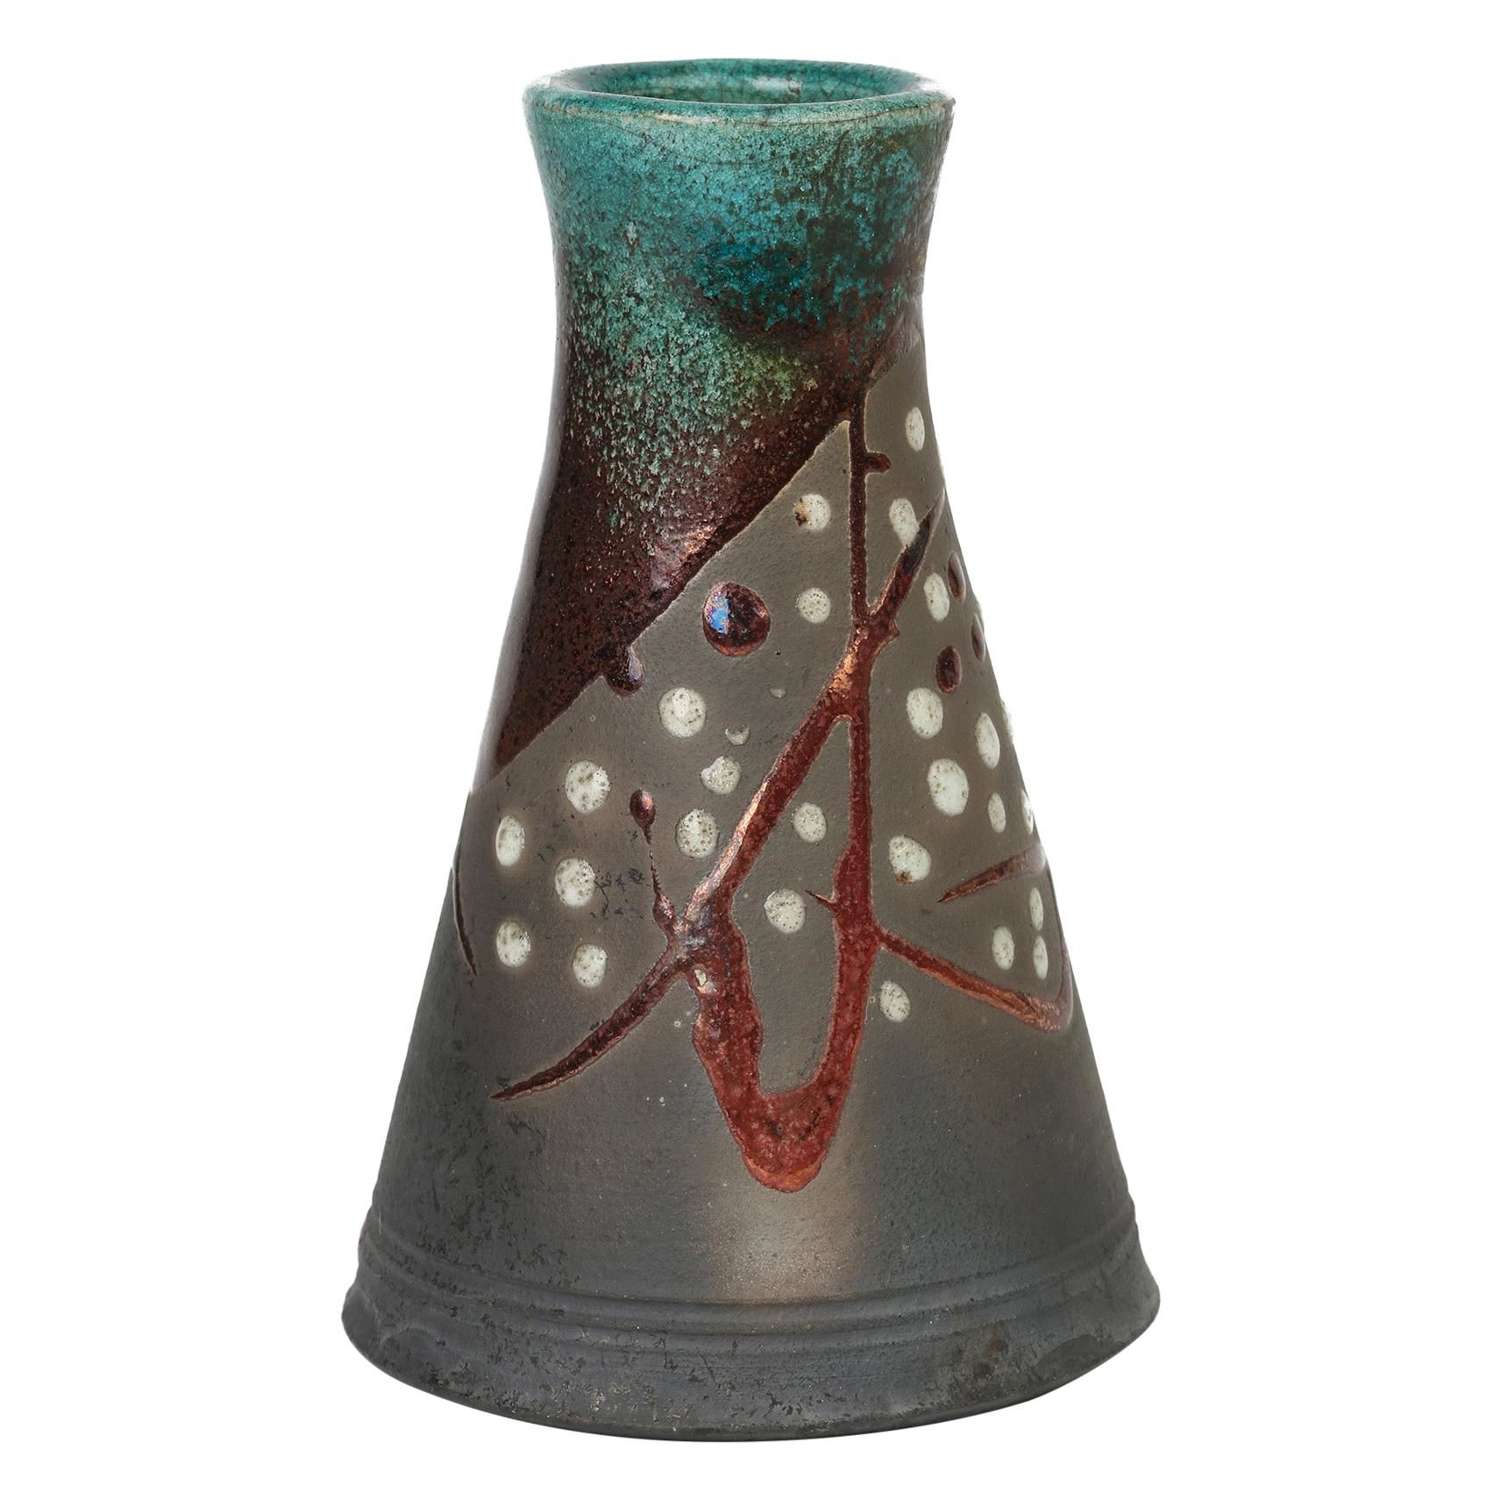 Stylish Raku Metallic Glazed Conical Shape Signed Studio Pottery Vase